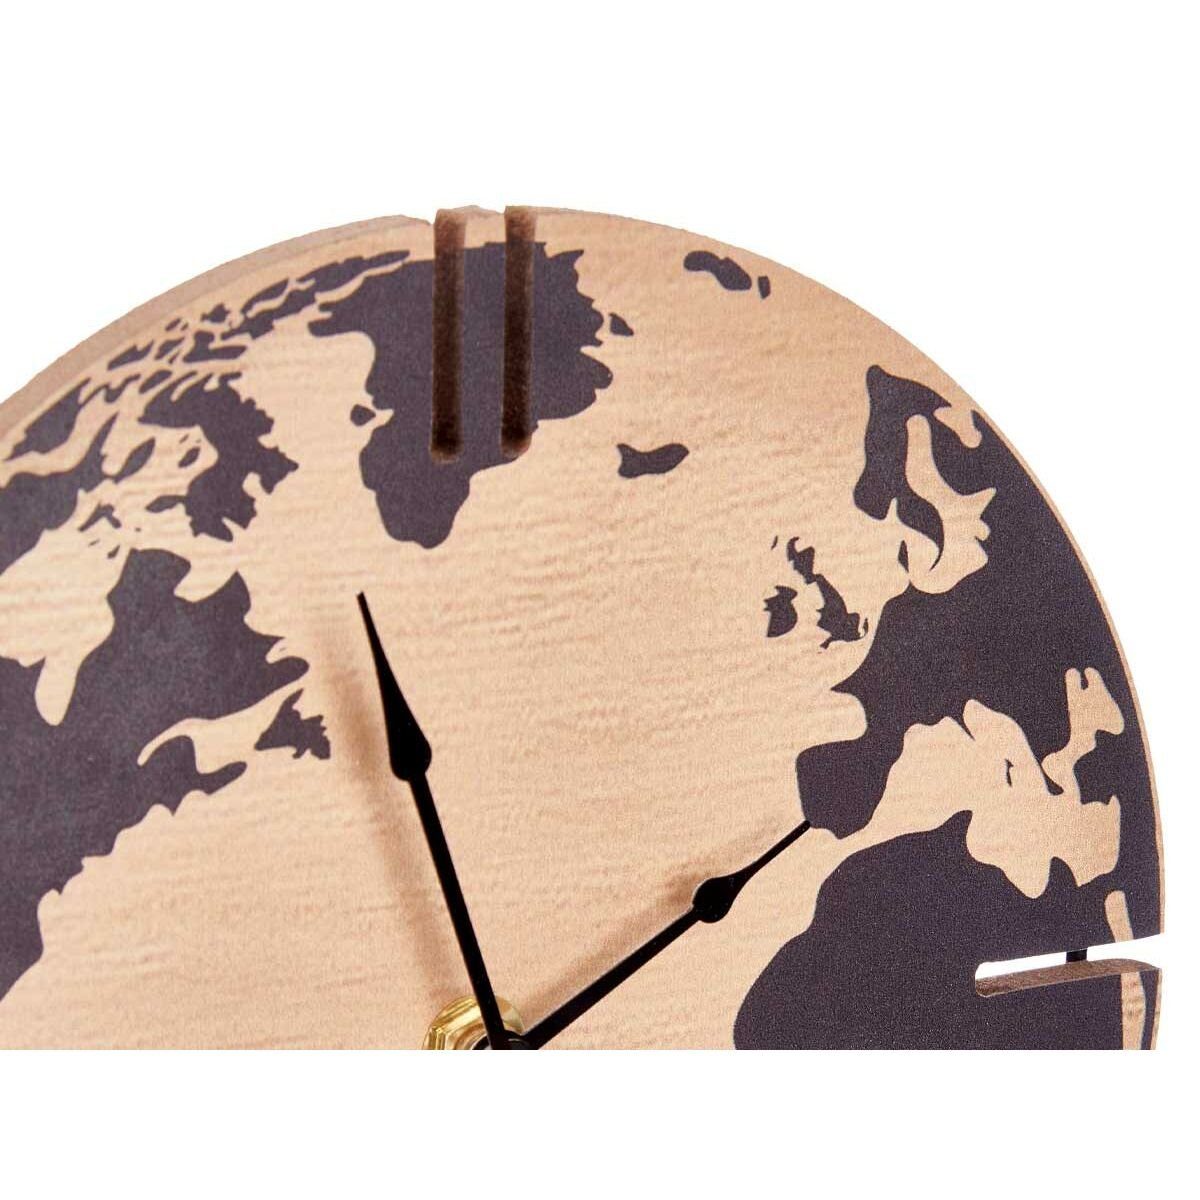 Gift Decor Uhr Schwarz Tischuhr x 12 Stück 22,5 30,5 Weltkarte MDF 6 cm x Holz Metall